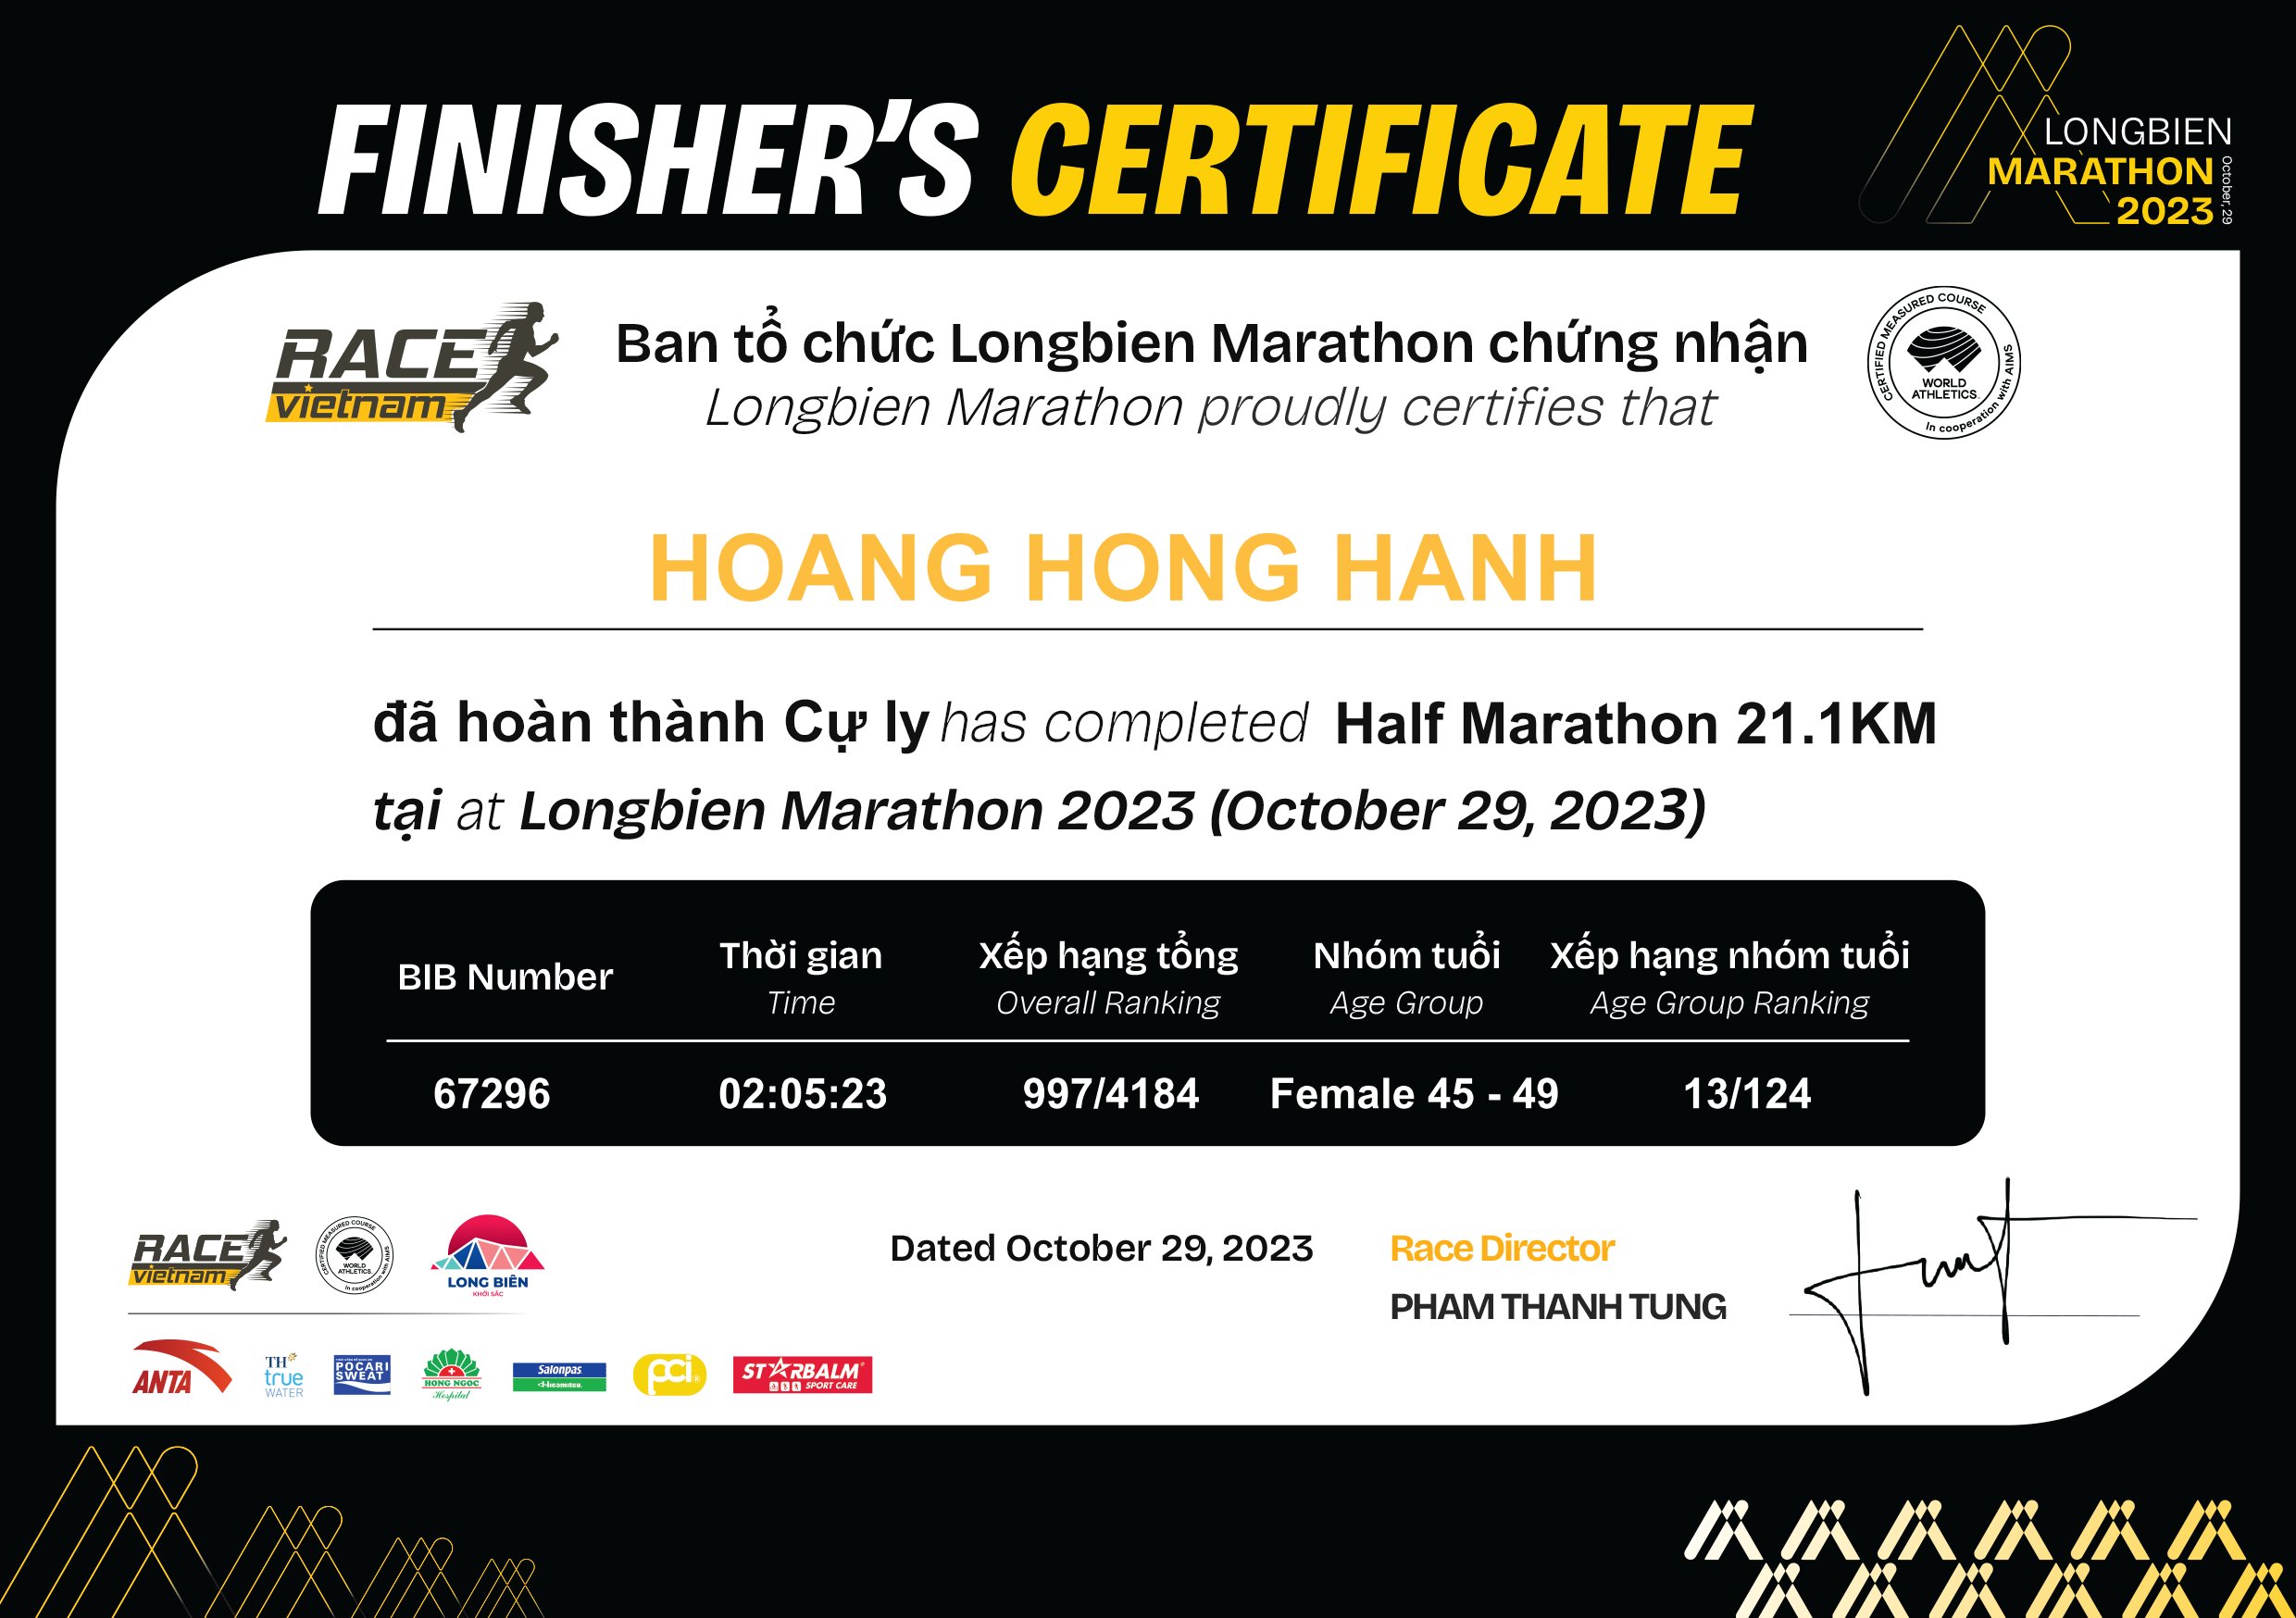 67296 - Hoang Hong Hanh